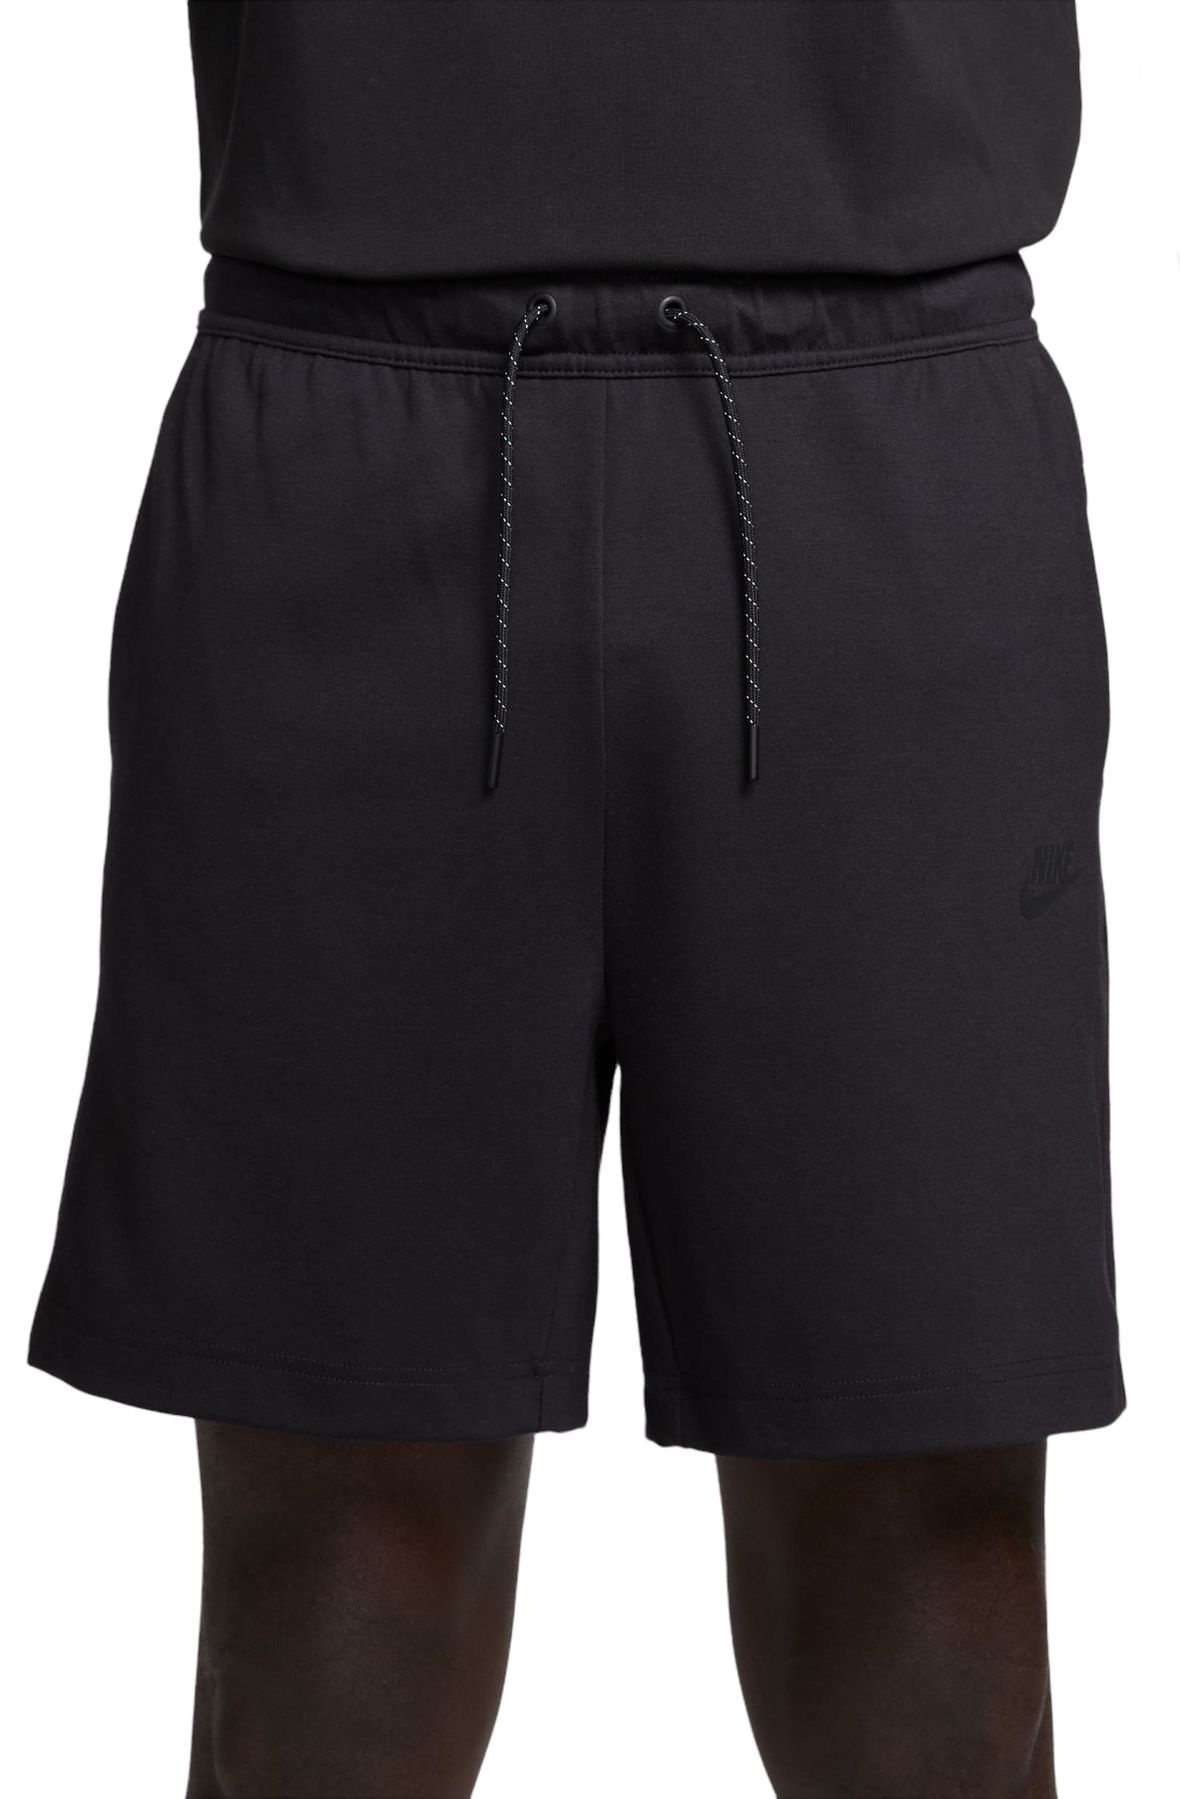 Nike Sportswear Tech Fleece Men's Shorts.